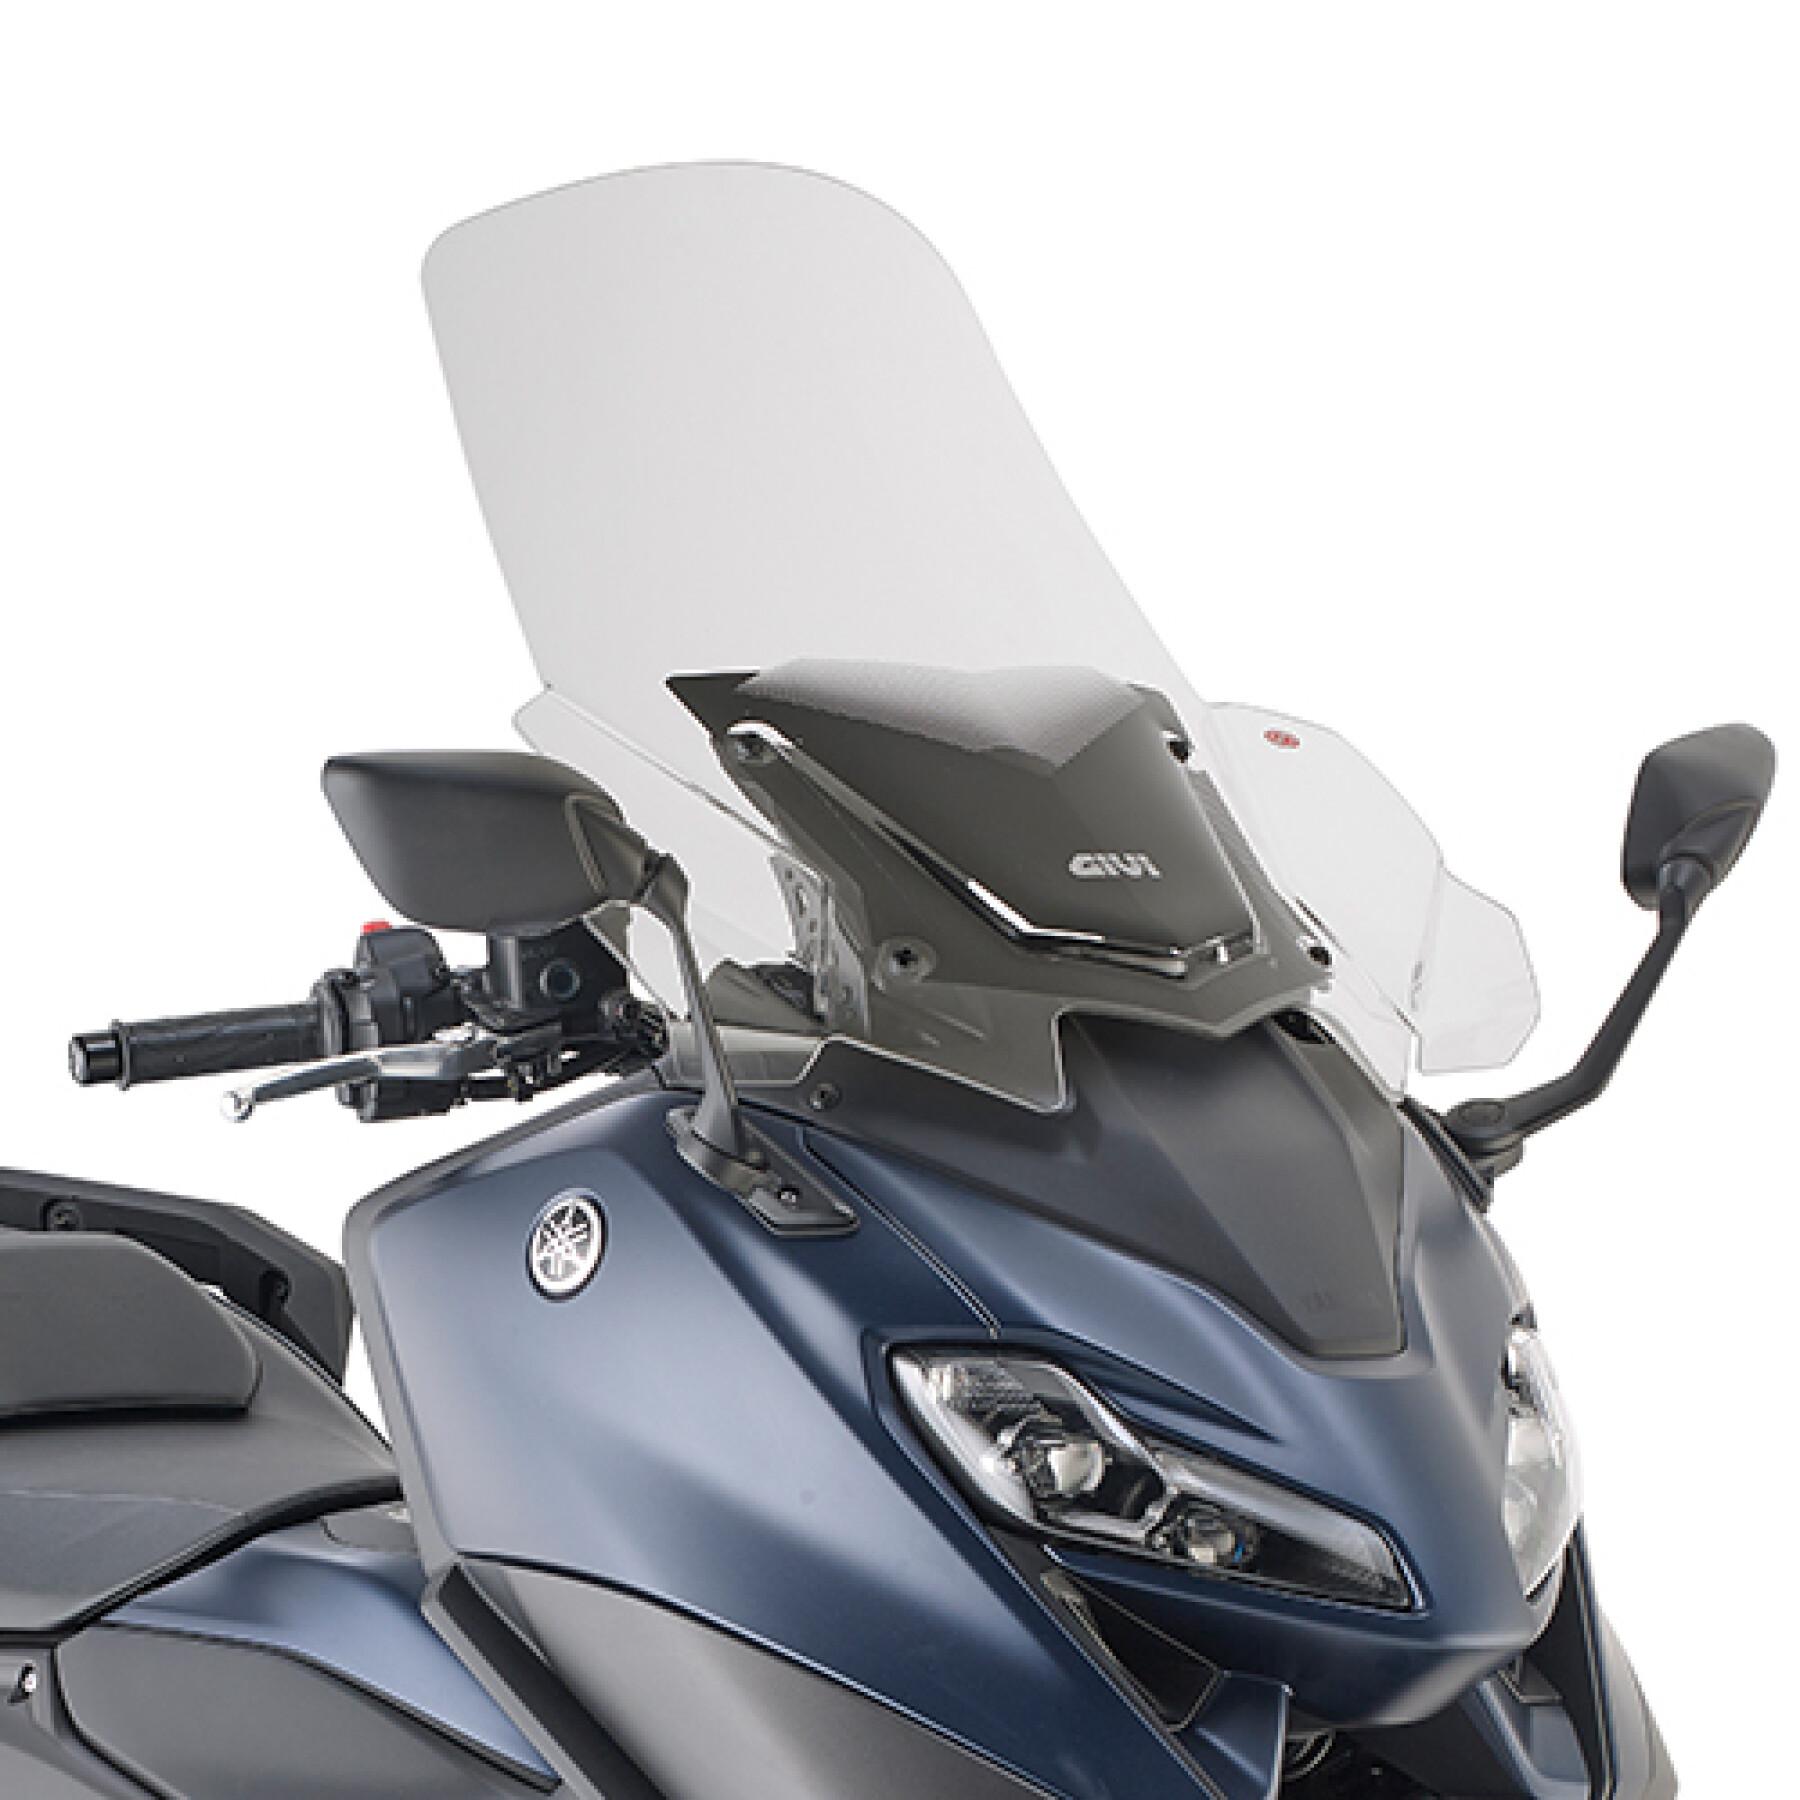 Windschutzscheibe Givi Yamaha T-max 560 (2022)